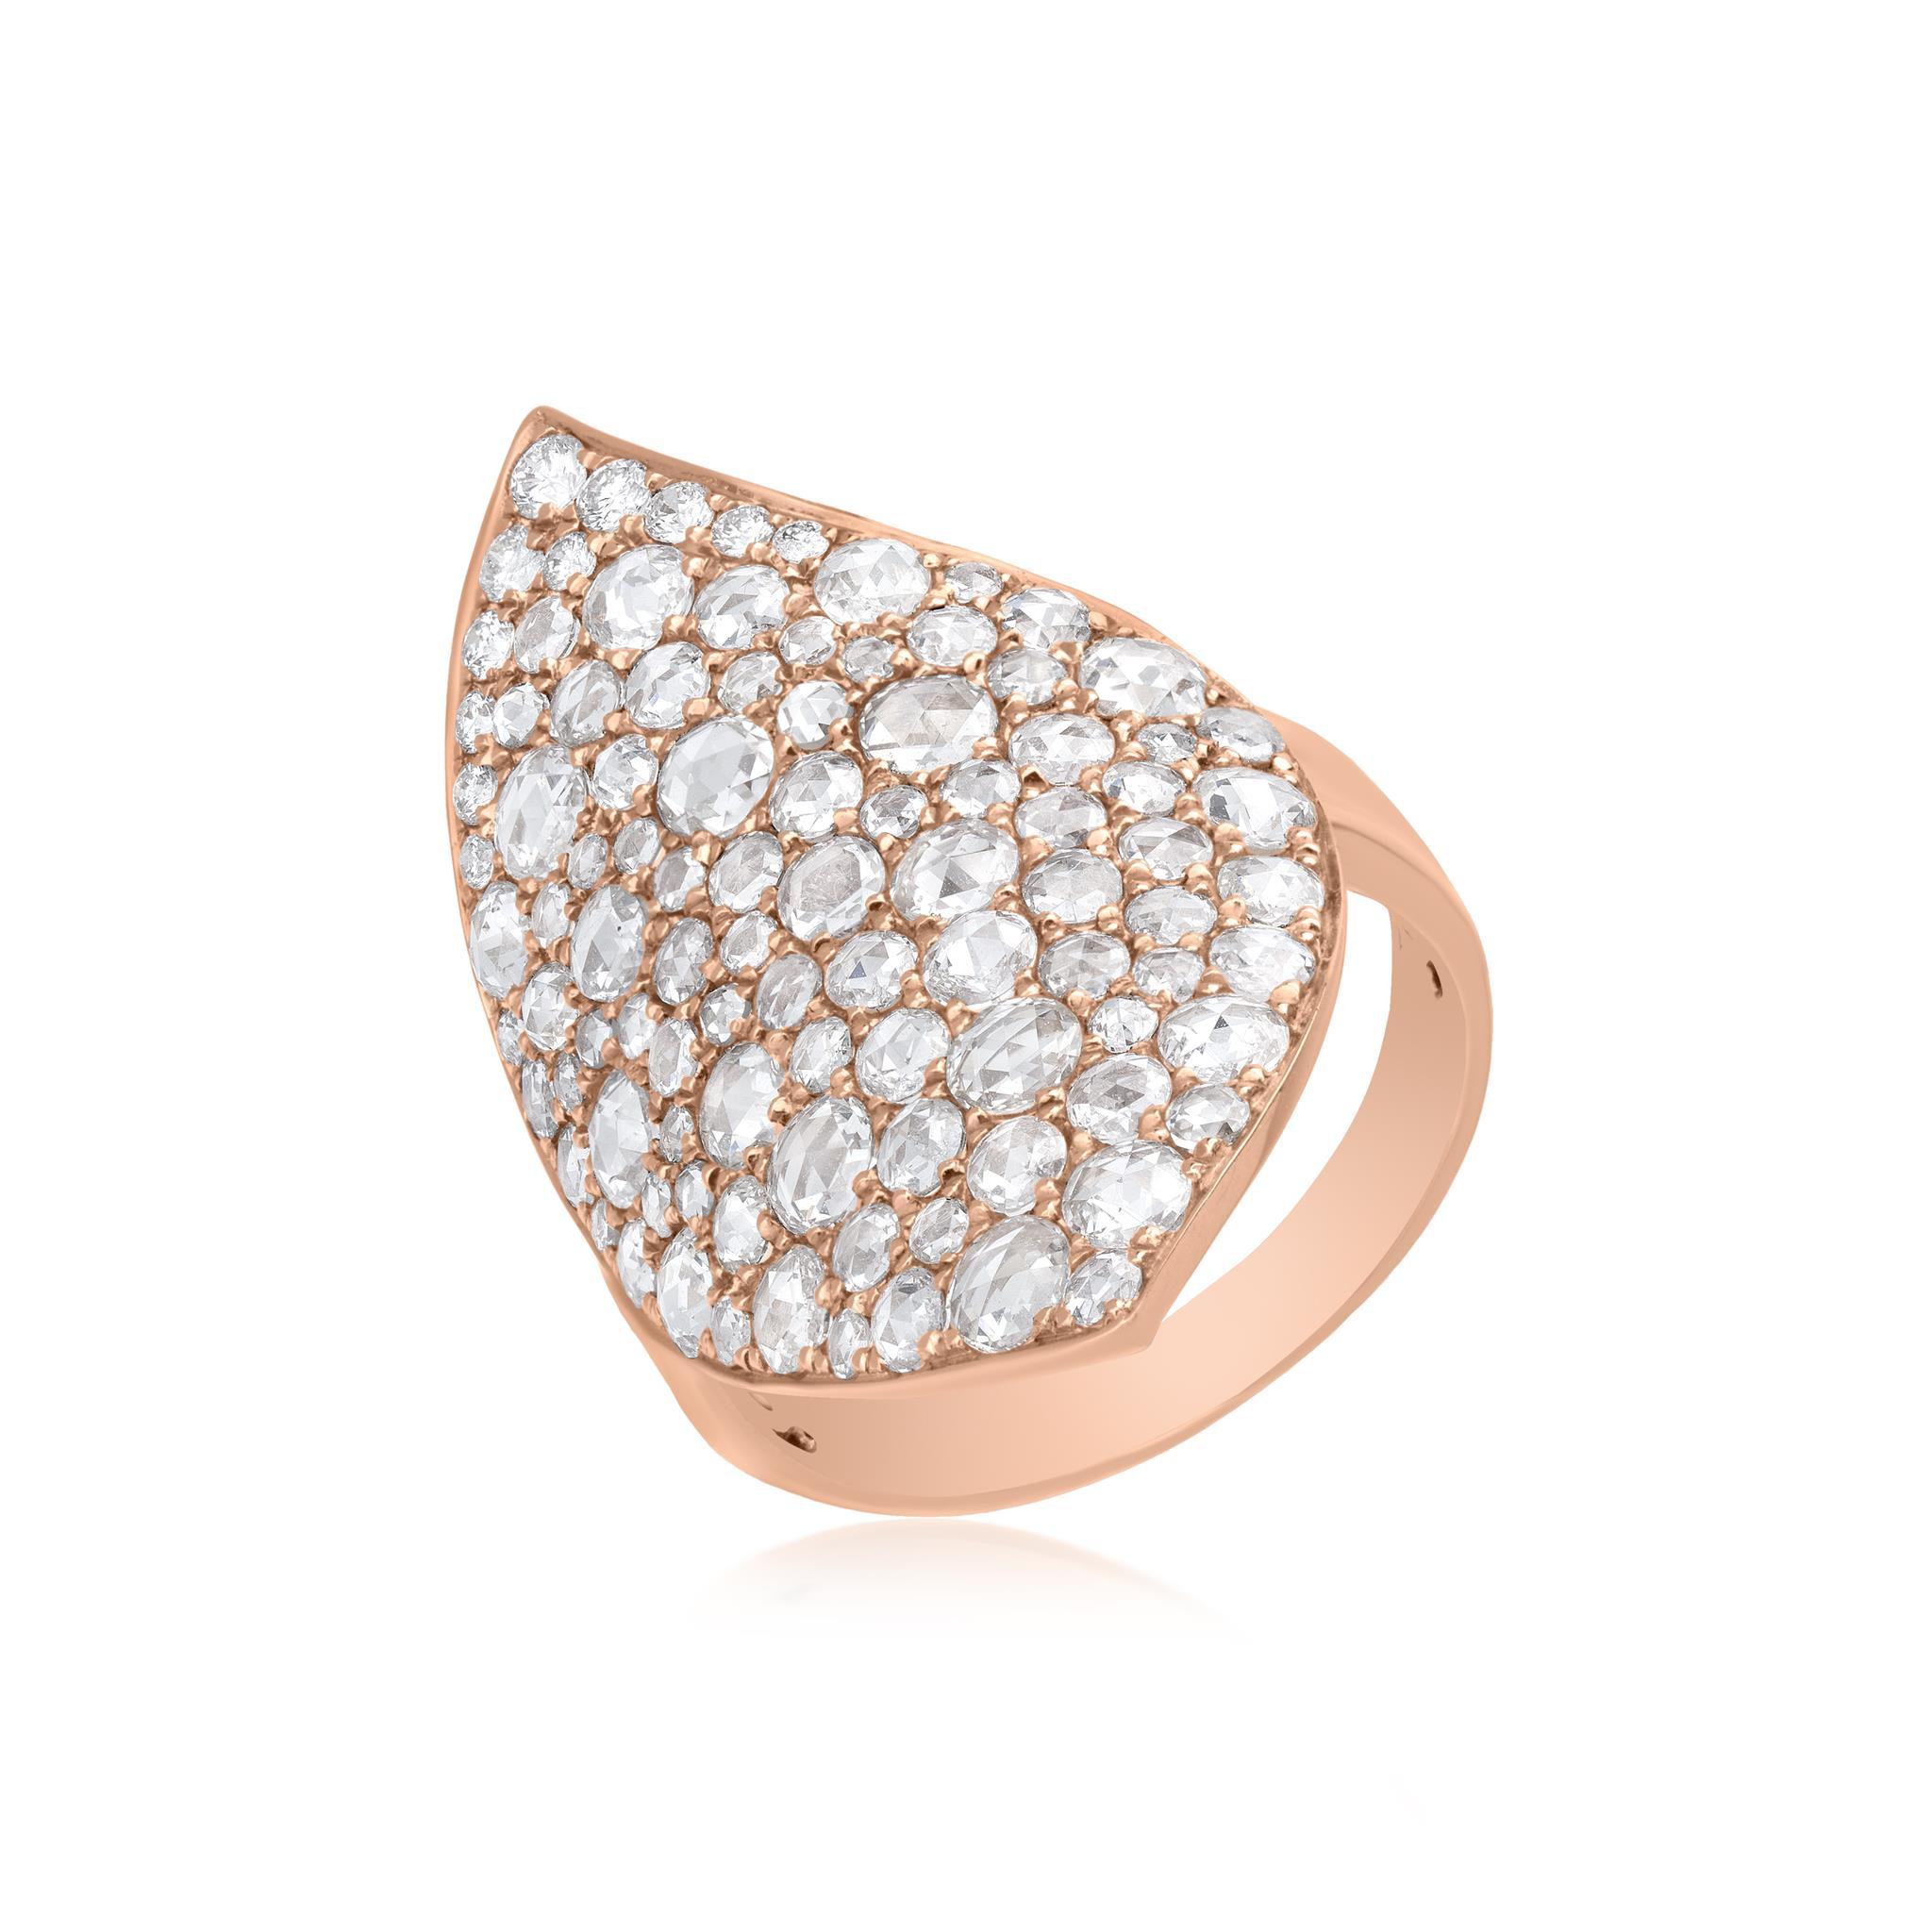 Setzen Sie ein atemberaubendes Zeichen mit dem Luxle 2,19 Cttw. Runder Diamant-Blatt-Cluster-Ring im Rosenschliff aus 18 Karat Roségold. Dieser Ring ist ein wahres Meisterwerk, das die Schönheit der Diamanten in einem einzigartigen und auffälligen